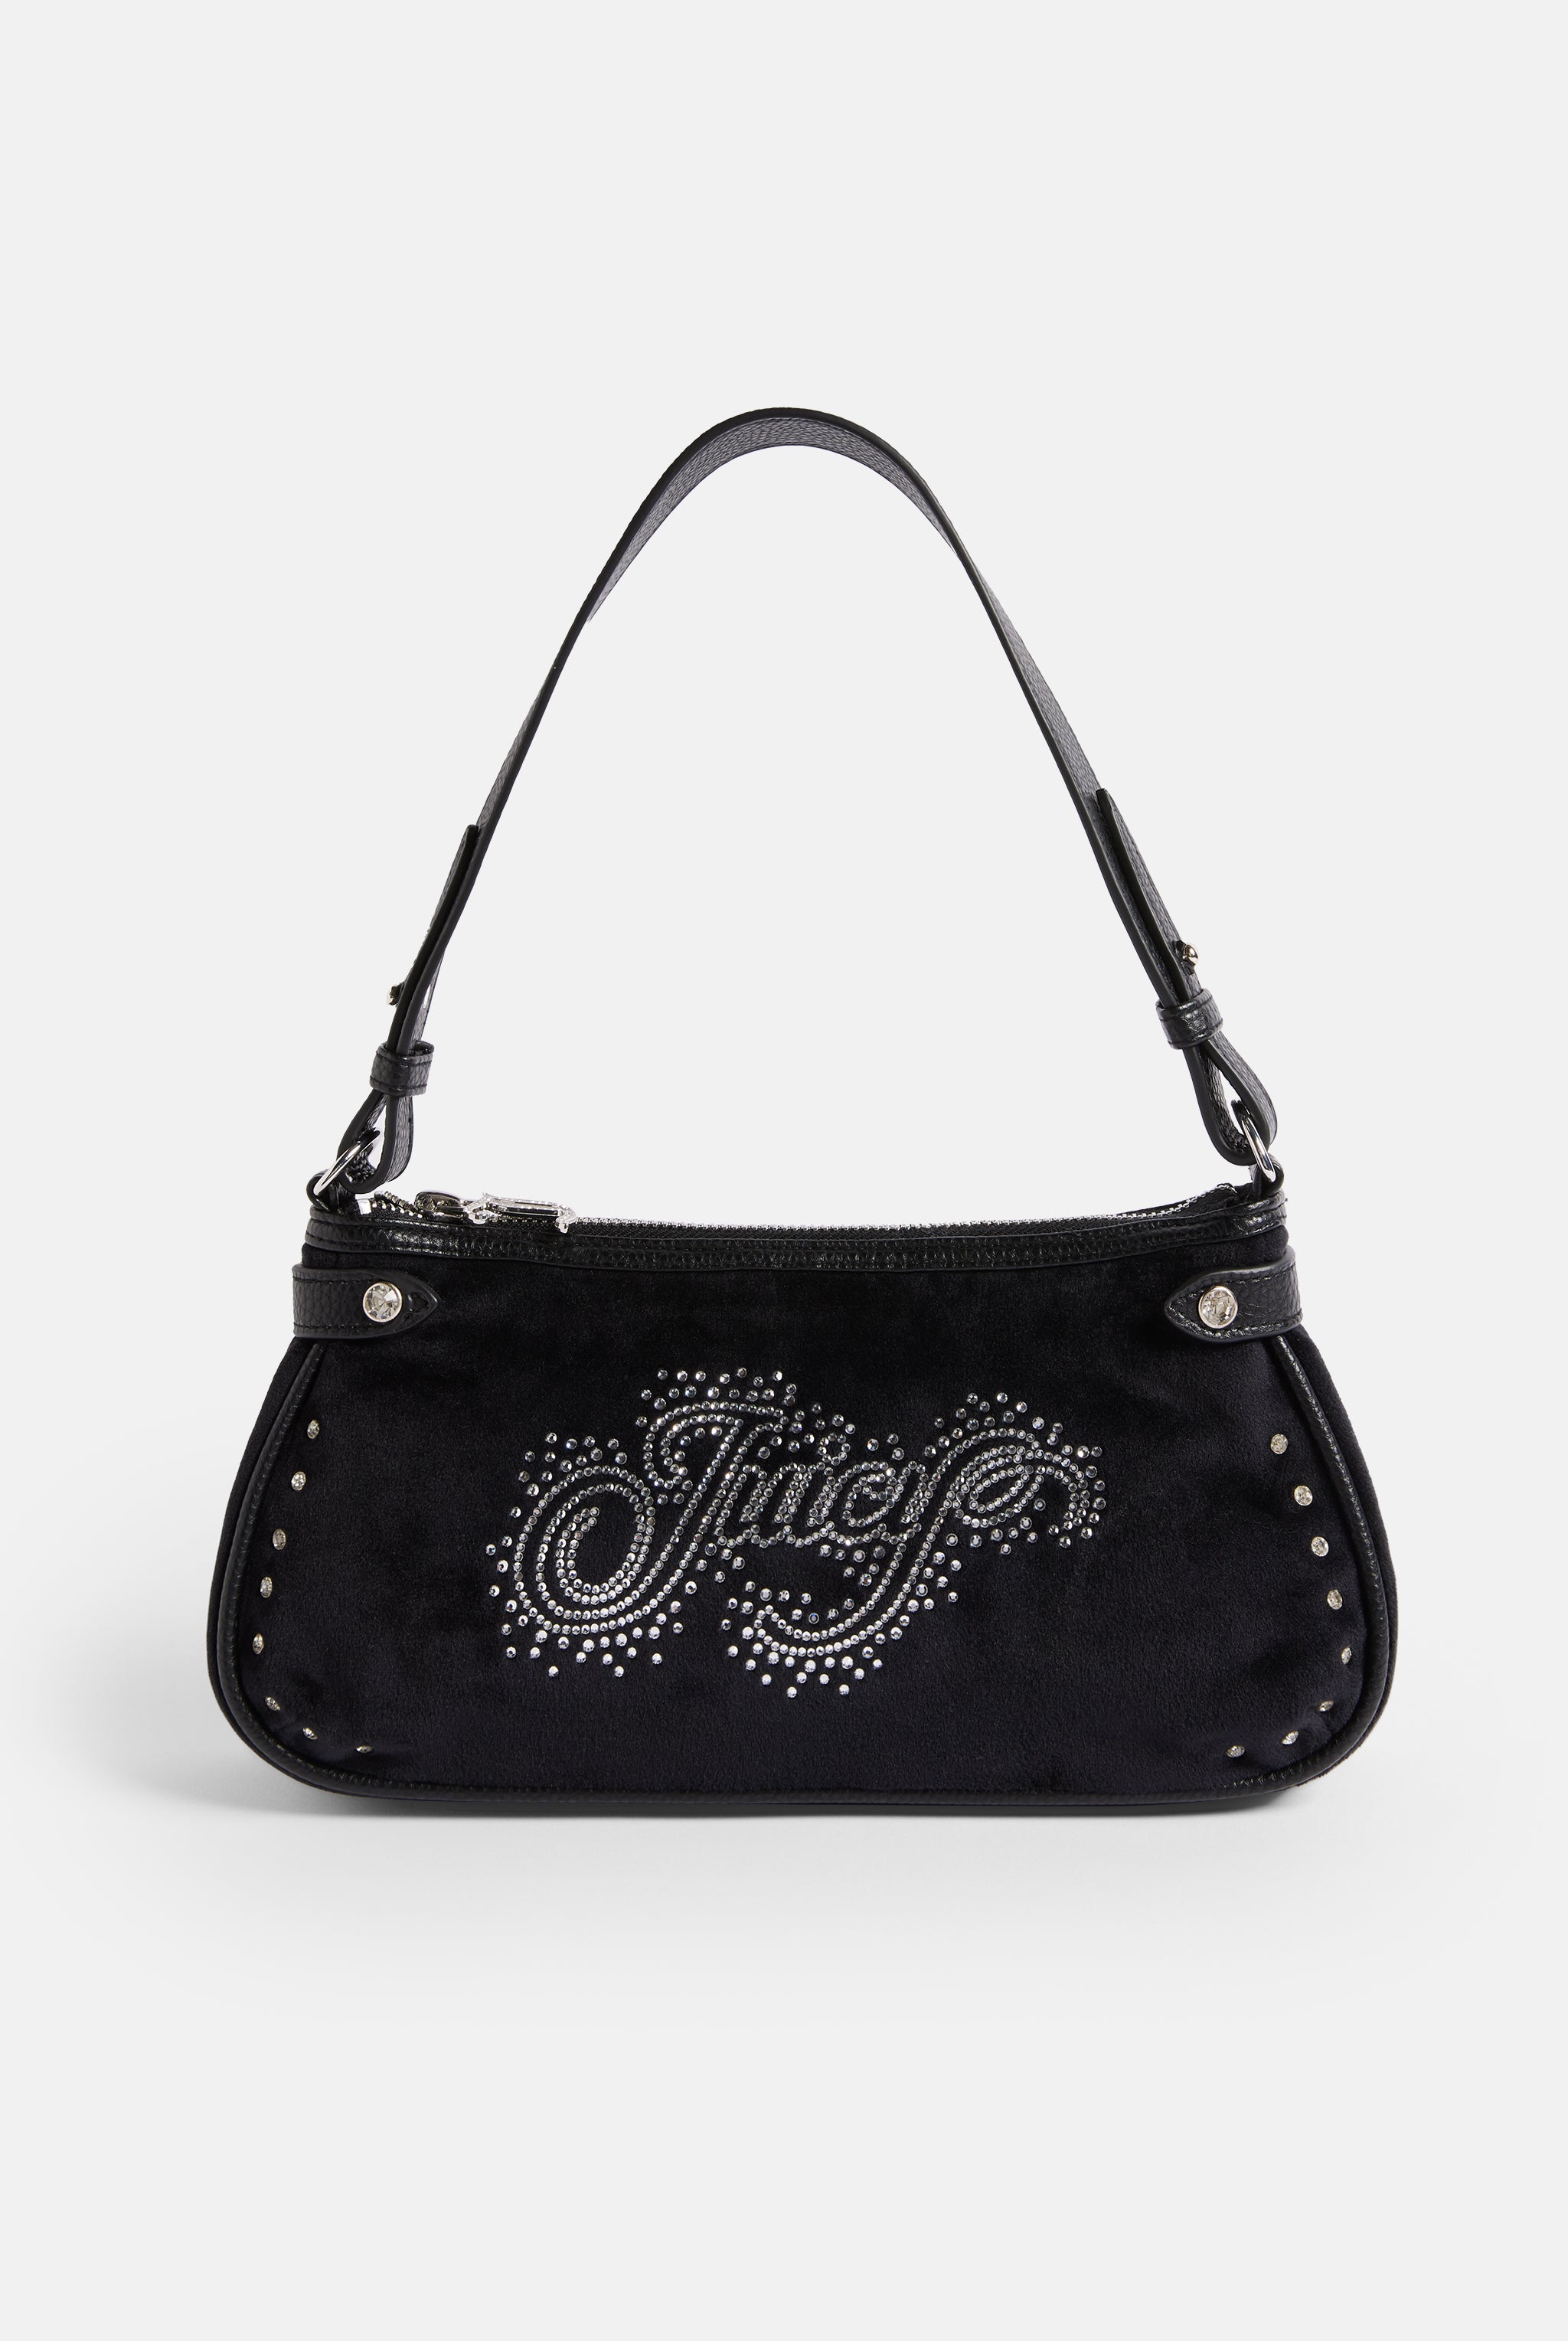 Juicy Couture Women's Black and Grey Wallet-purses – DoorStop